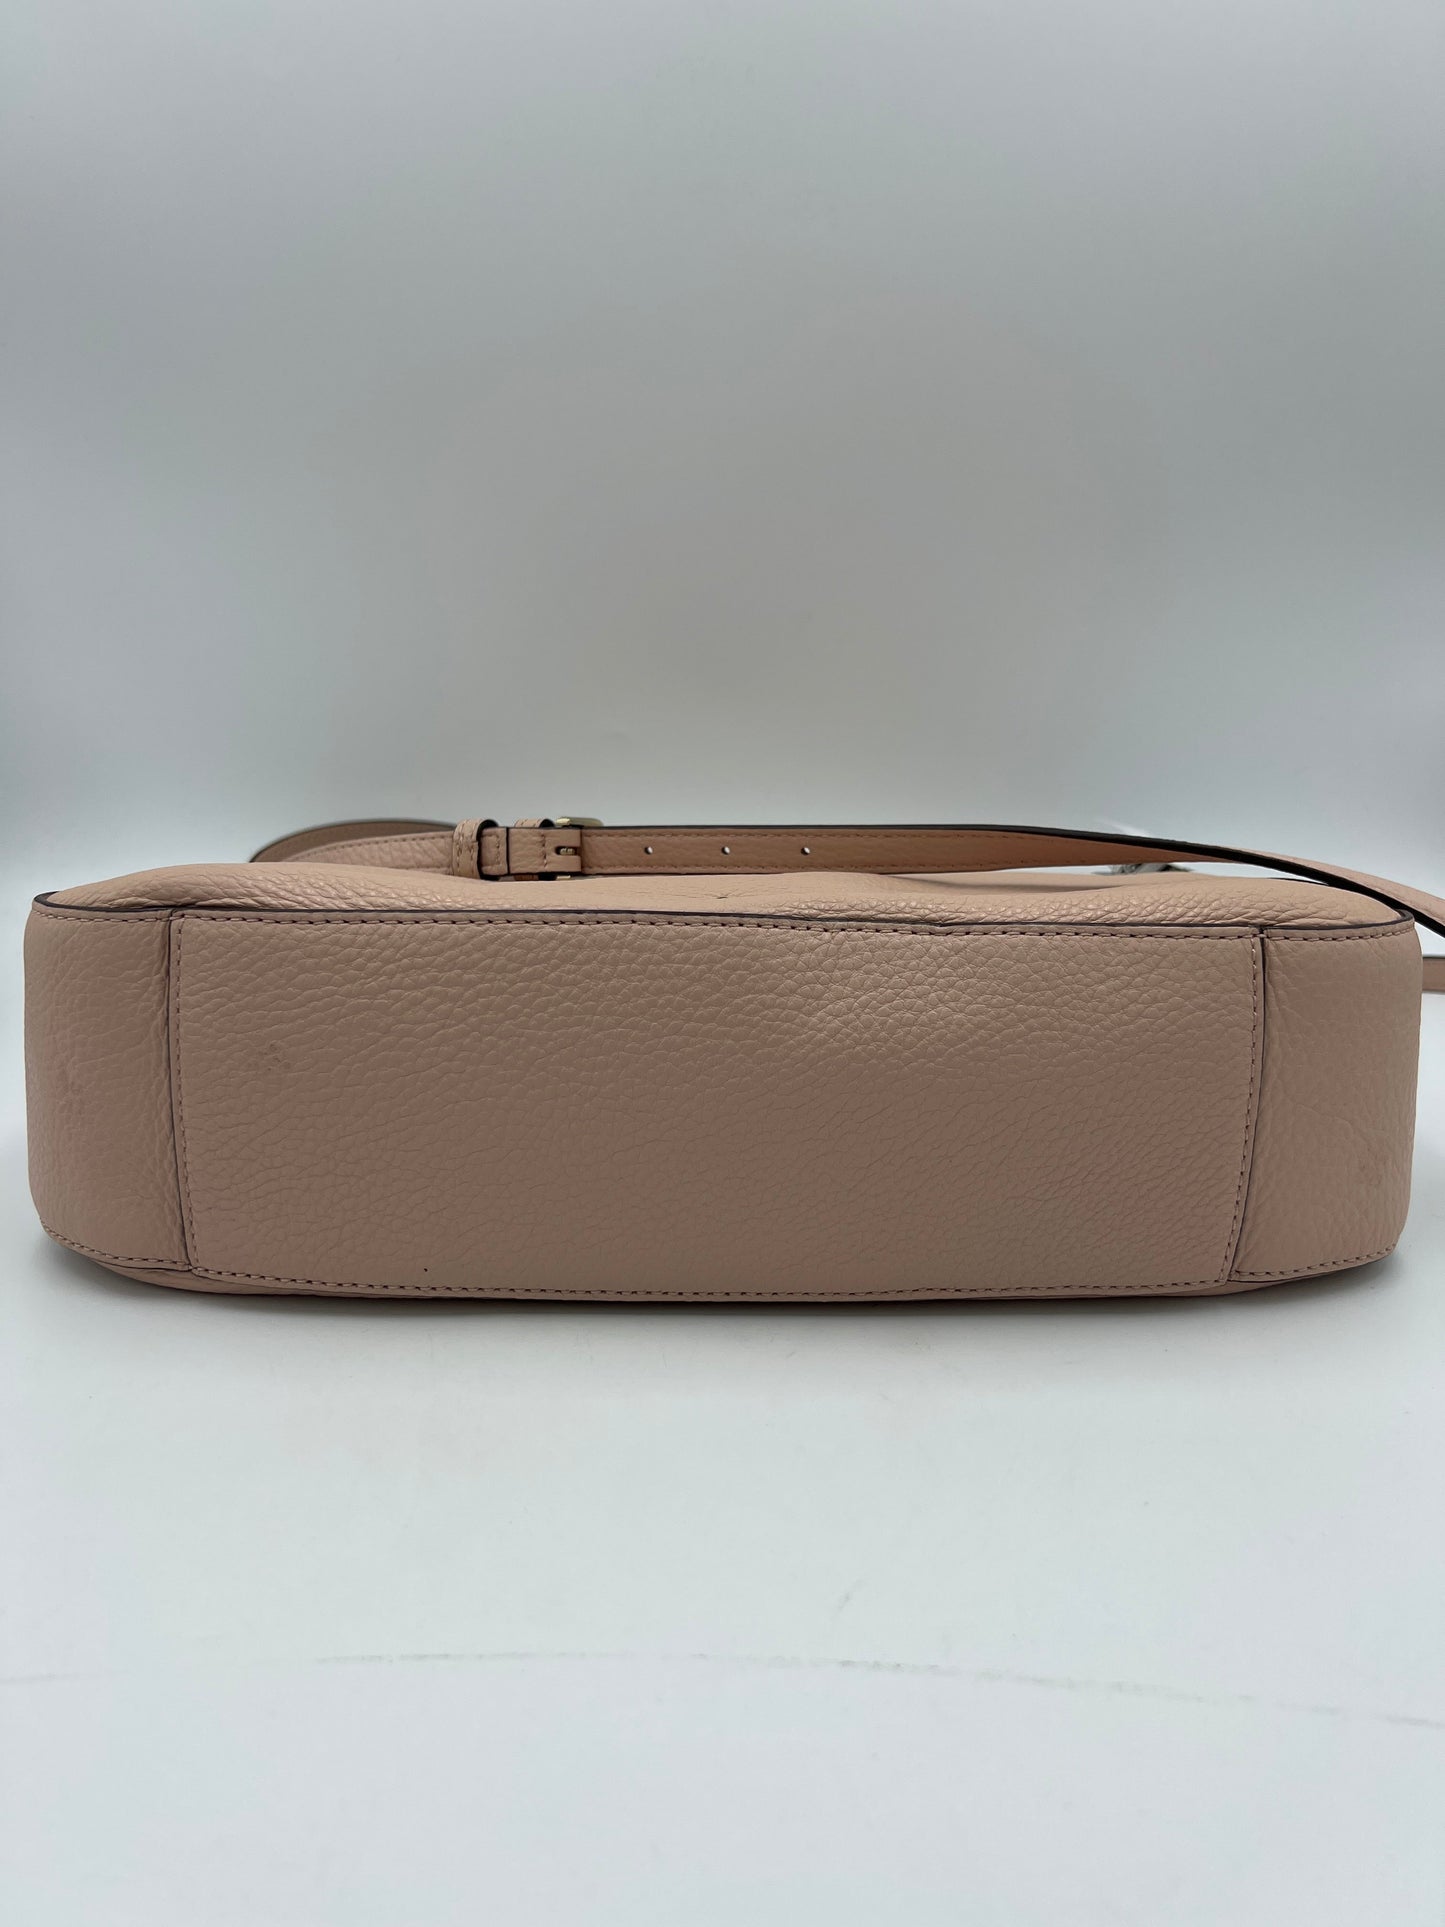 New! Handbag Designer By Kate Spade  Size: Large